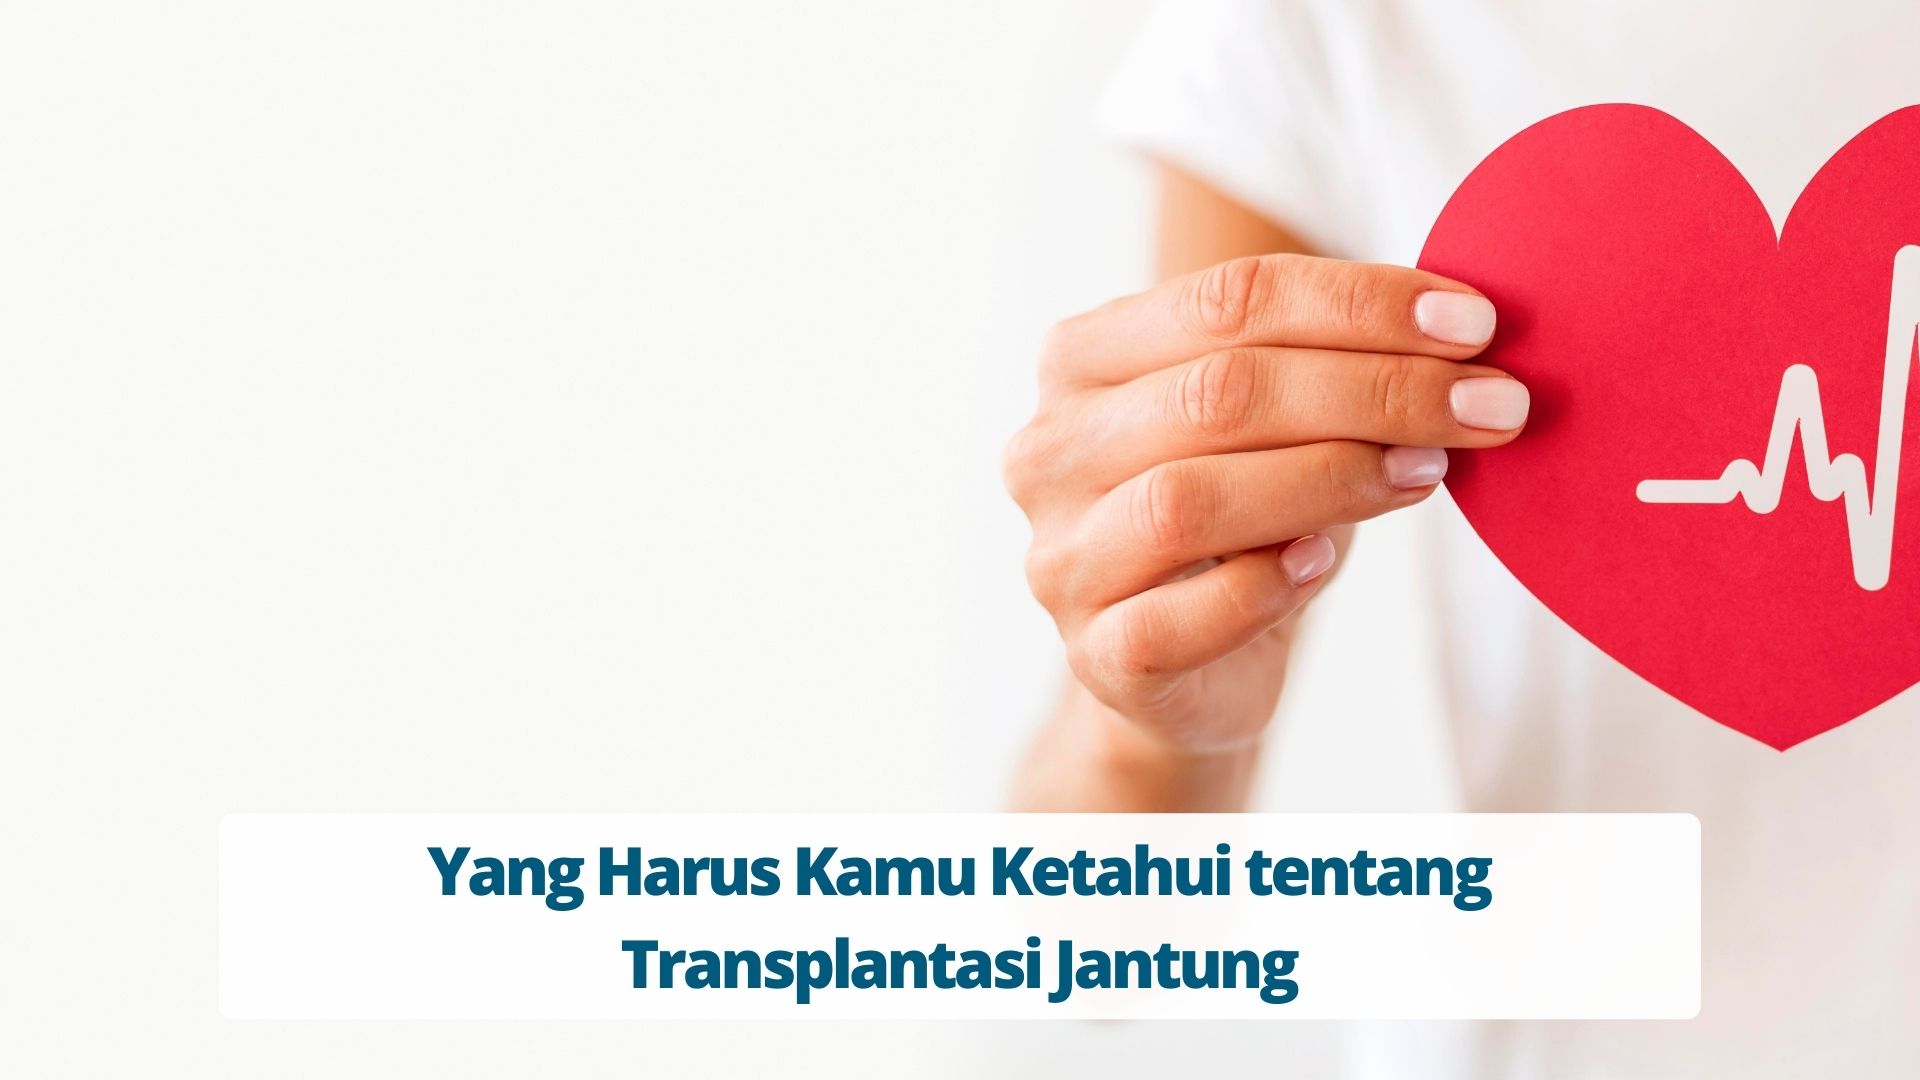 Yang Harus Kamu Ketahui tentang Transplantasi Jantung